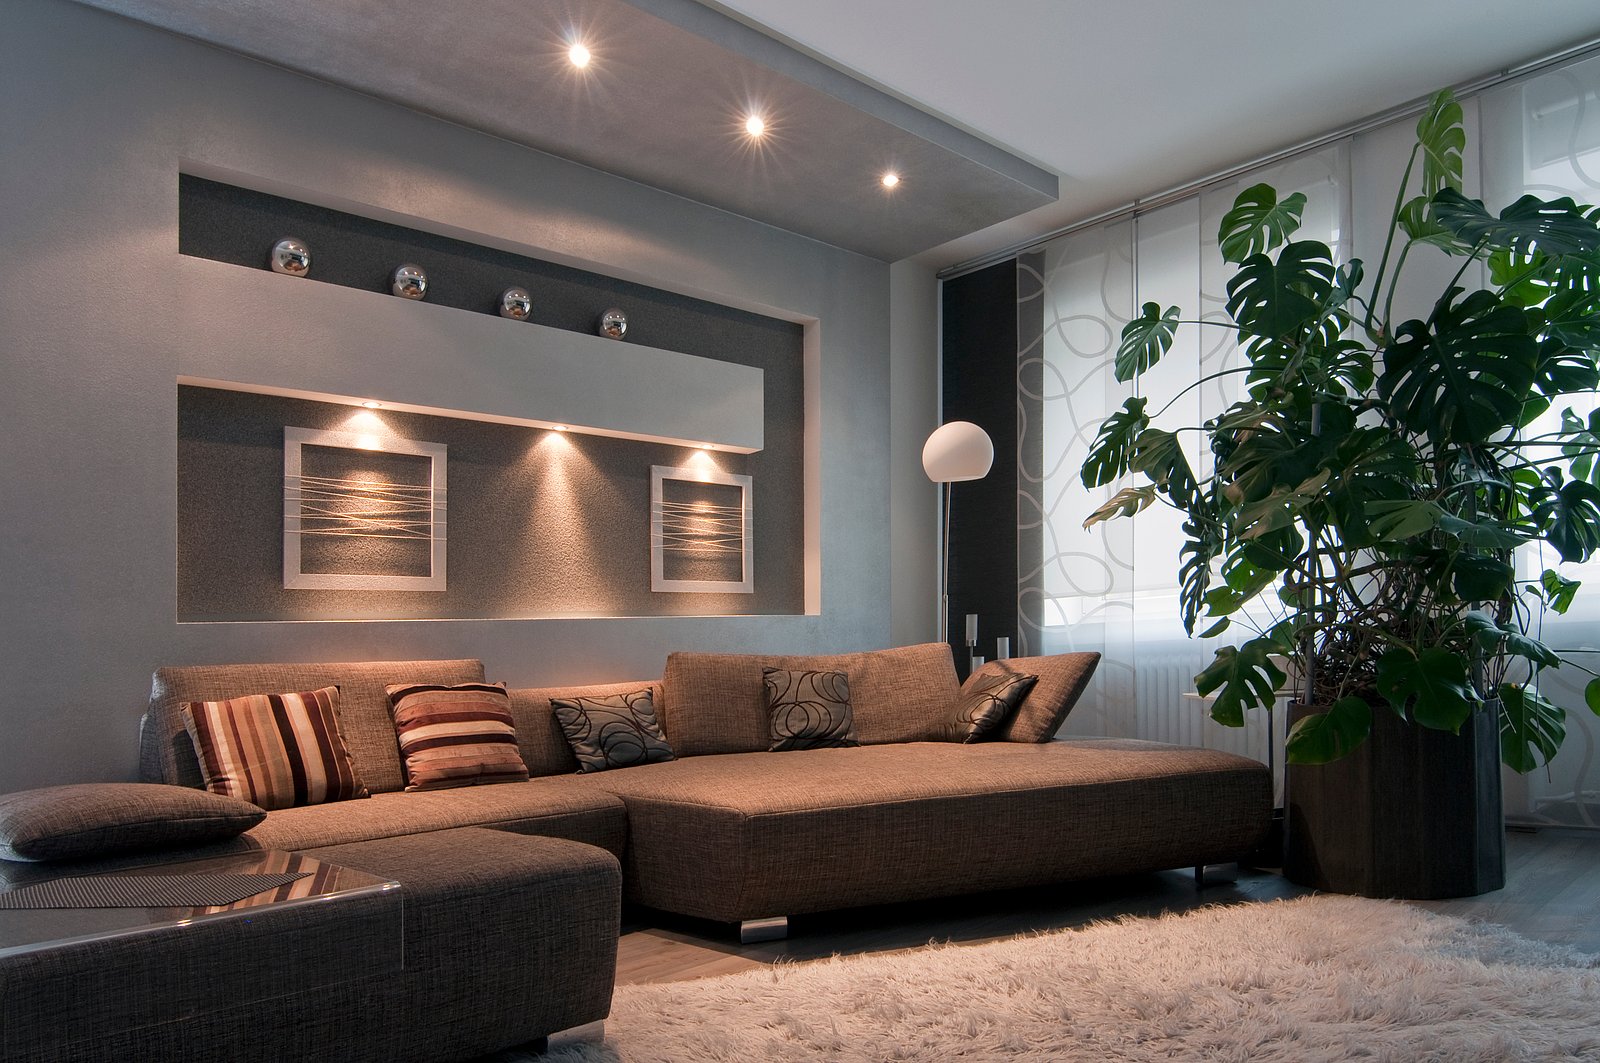 Con la nostra esperienza e conoscenza, creiamo la giusta atmosfera per la tua casa, il tuo hotel, il tuo ufficio, la tua azienda, la tua area di produzione o il tuo impianto esterno con i più moderni concetti di illuminazione a LED.